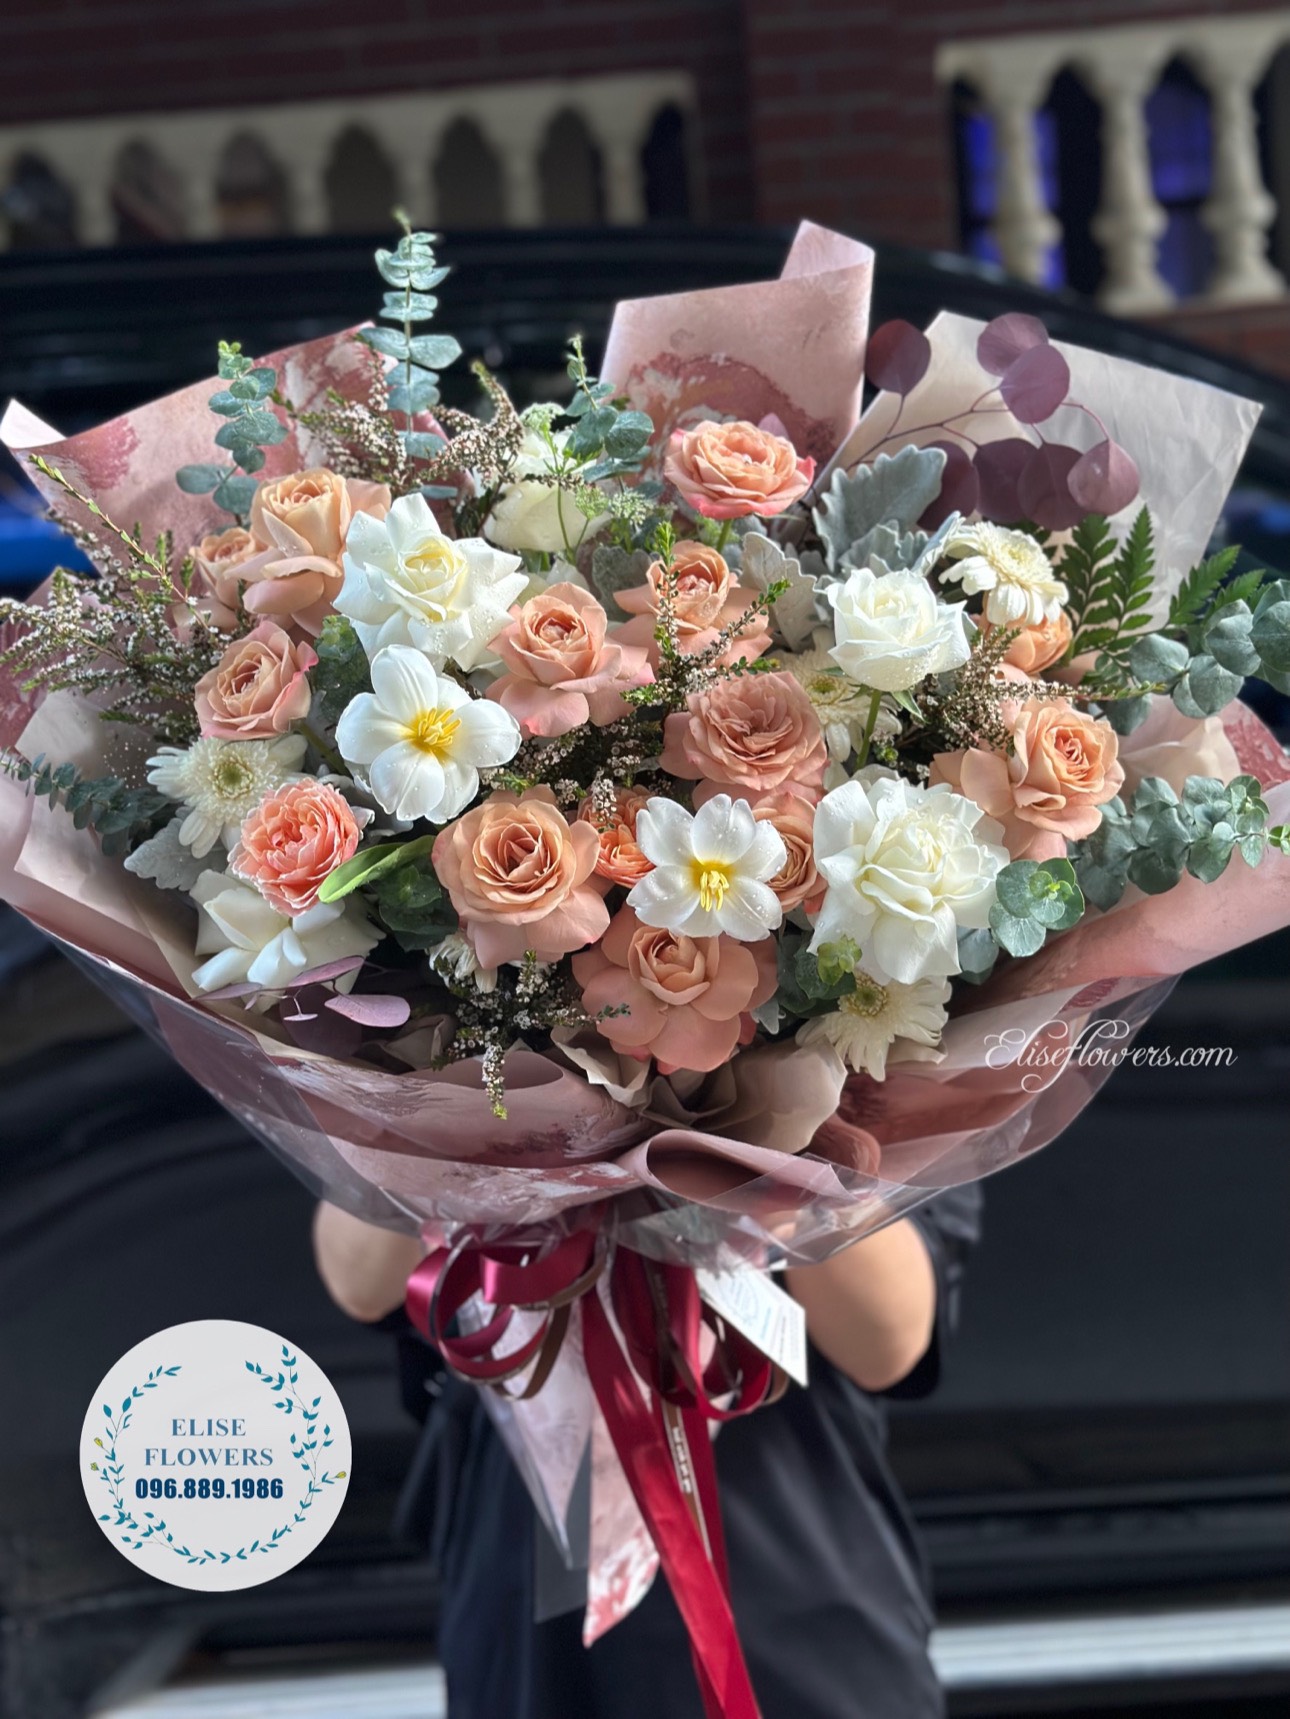 Bó hoa màu hồng nâu coffee sang trọng - Hoa sinh nhật đẹp ở Hà Nội